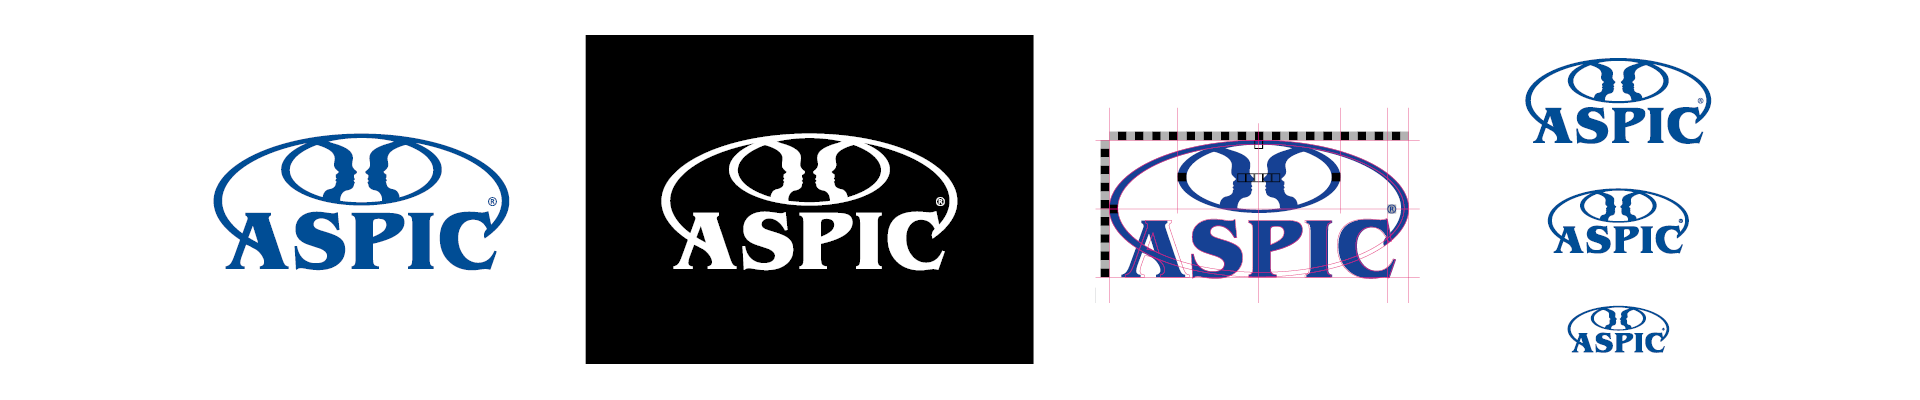 Presentazione logo-marchio ASPIC